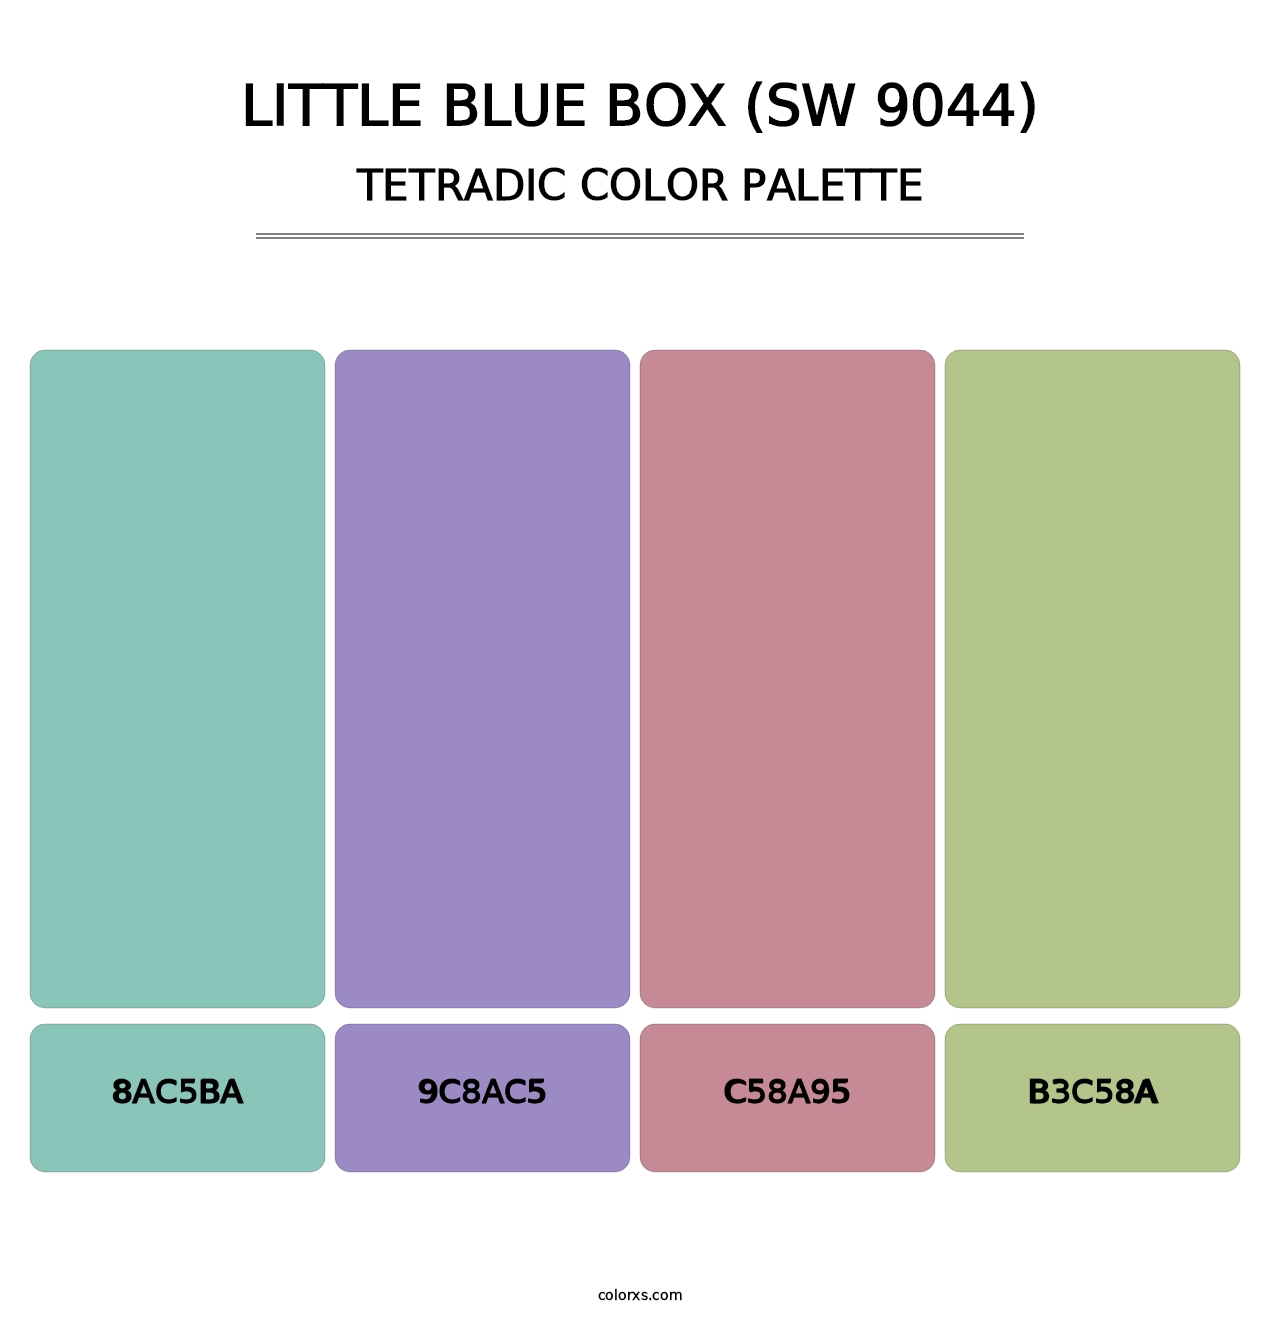 Little Blue Box (SW 9044) - Tetradic Color Palette